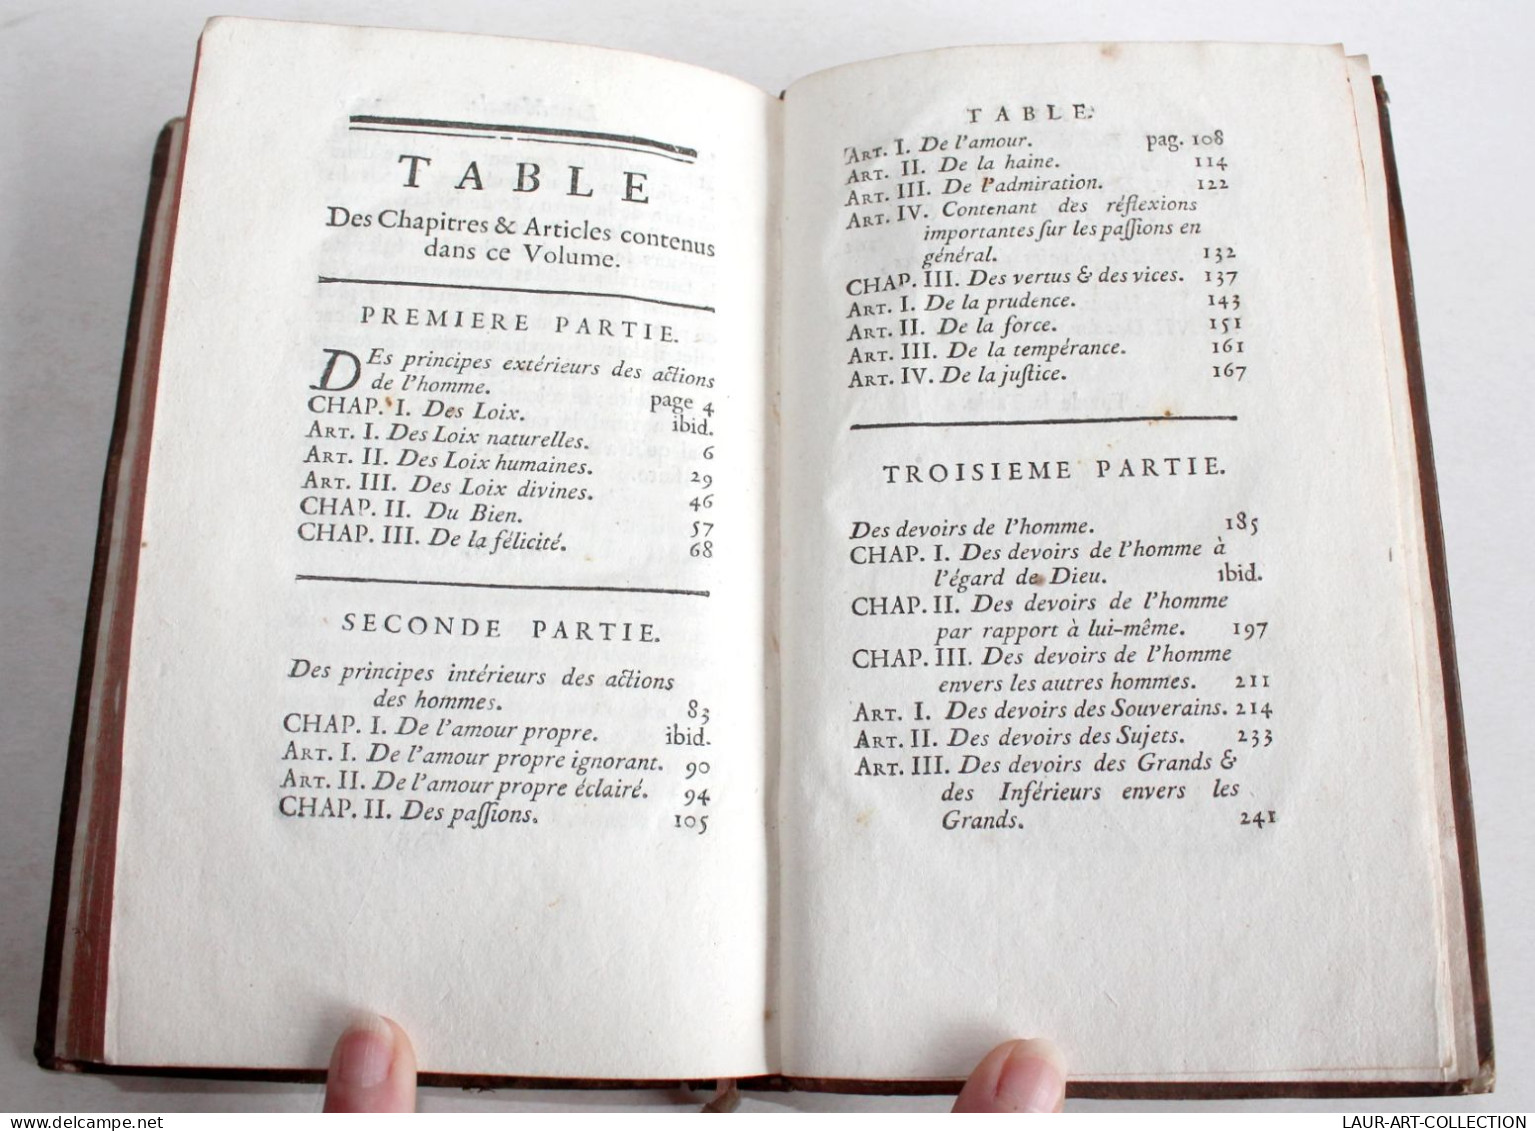 RARE EDITION ORIGINALE! LA MORALE Par COCHET AUTEUR DE LA CLEF... 1755 HERISSANT, En TTBE, ANCIEN LIVRE XVIIIe (2204.53) - 1701-1800